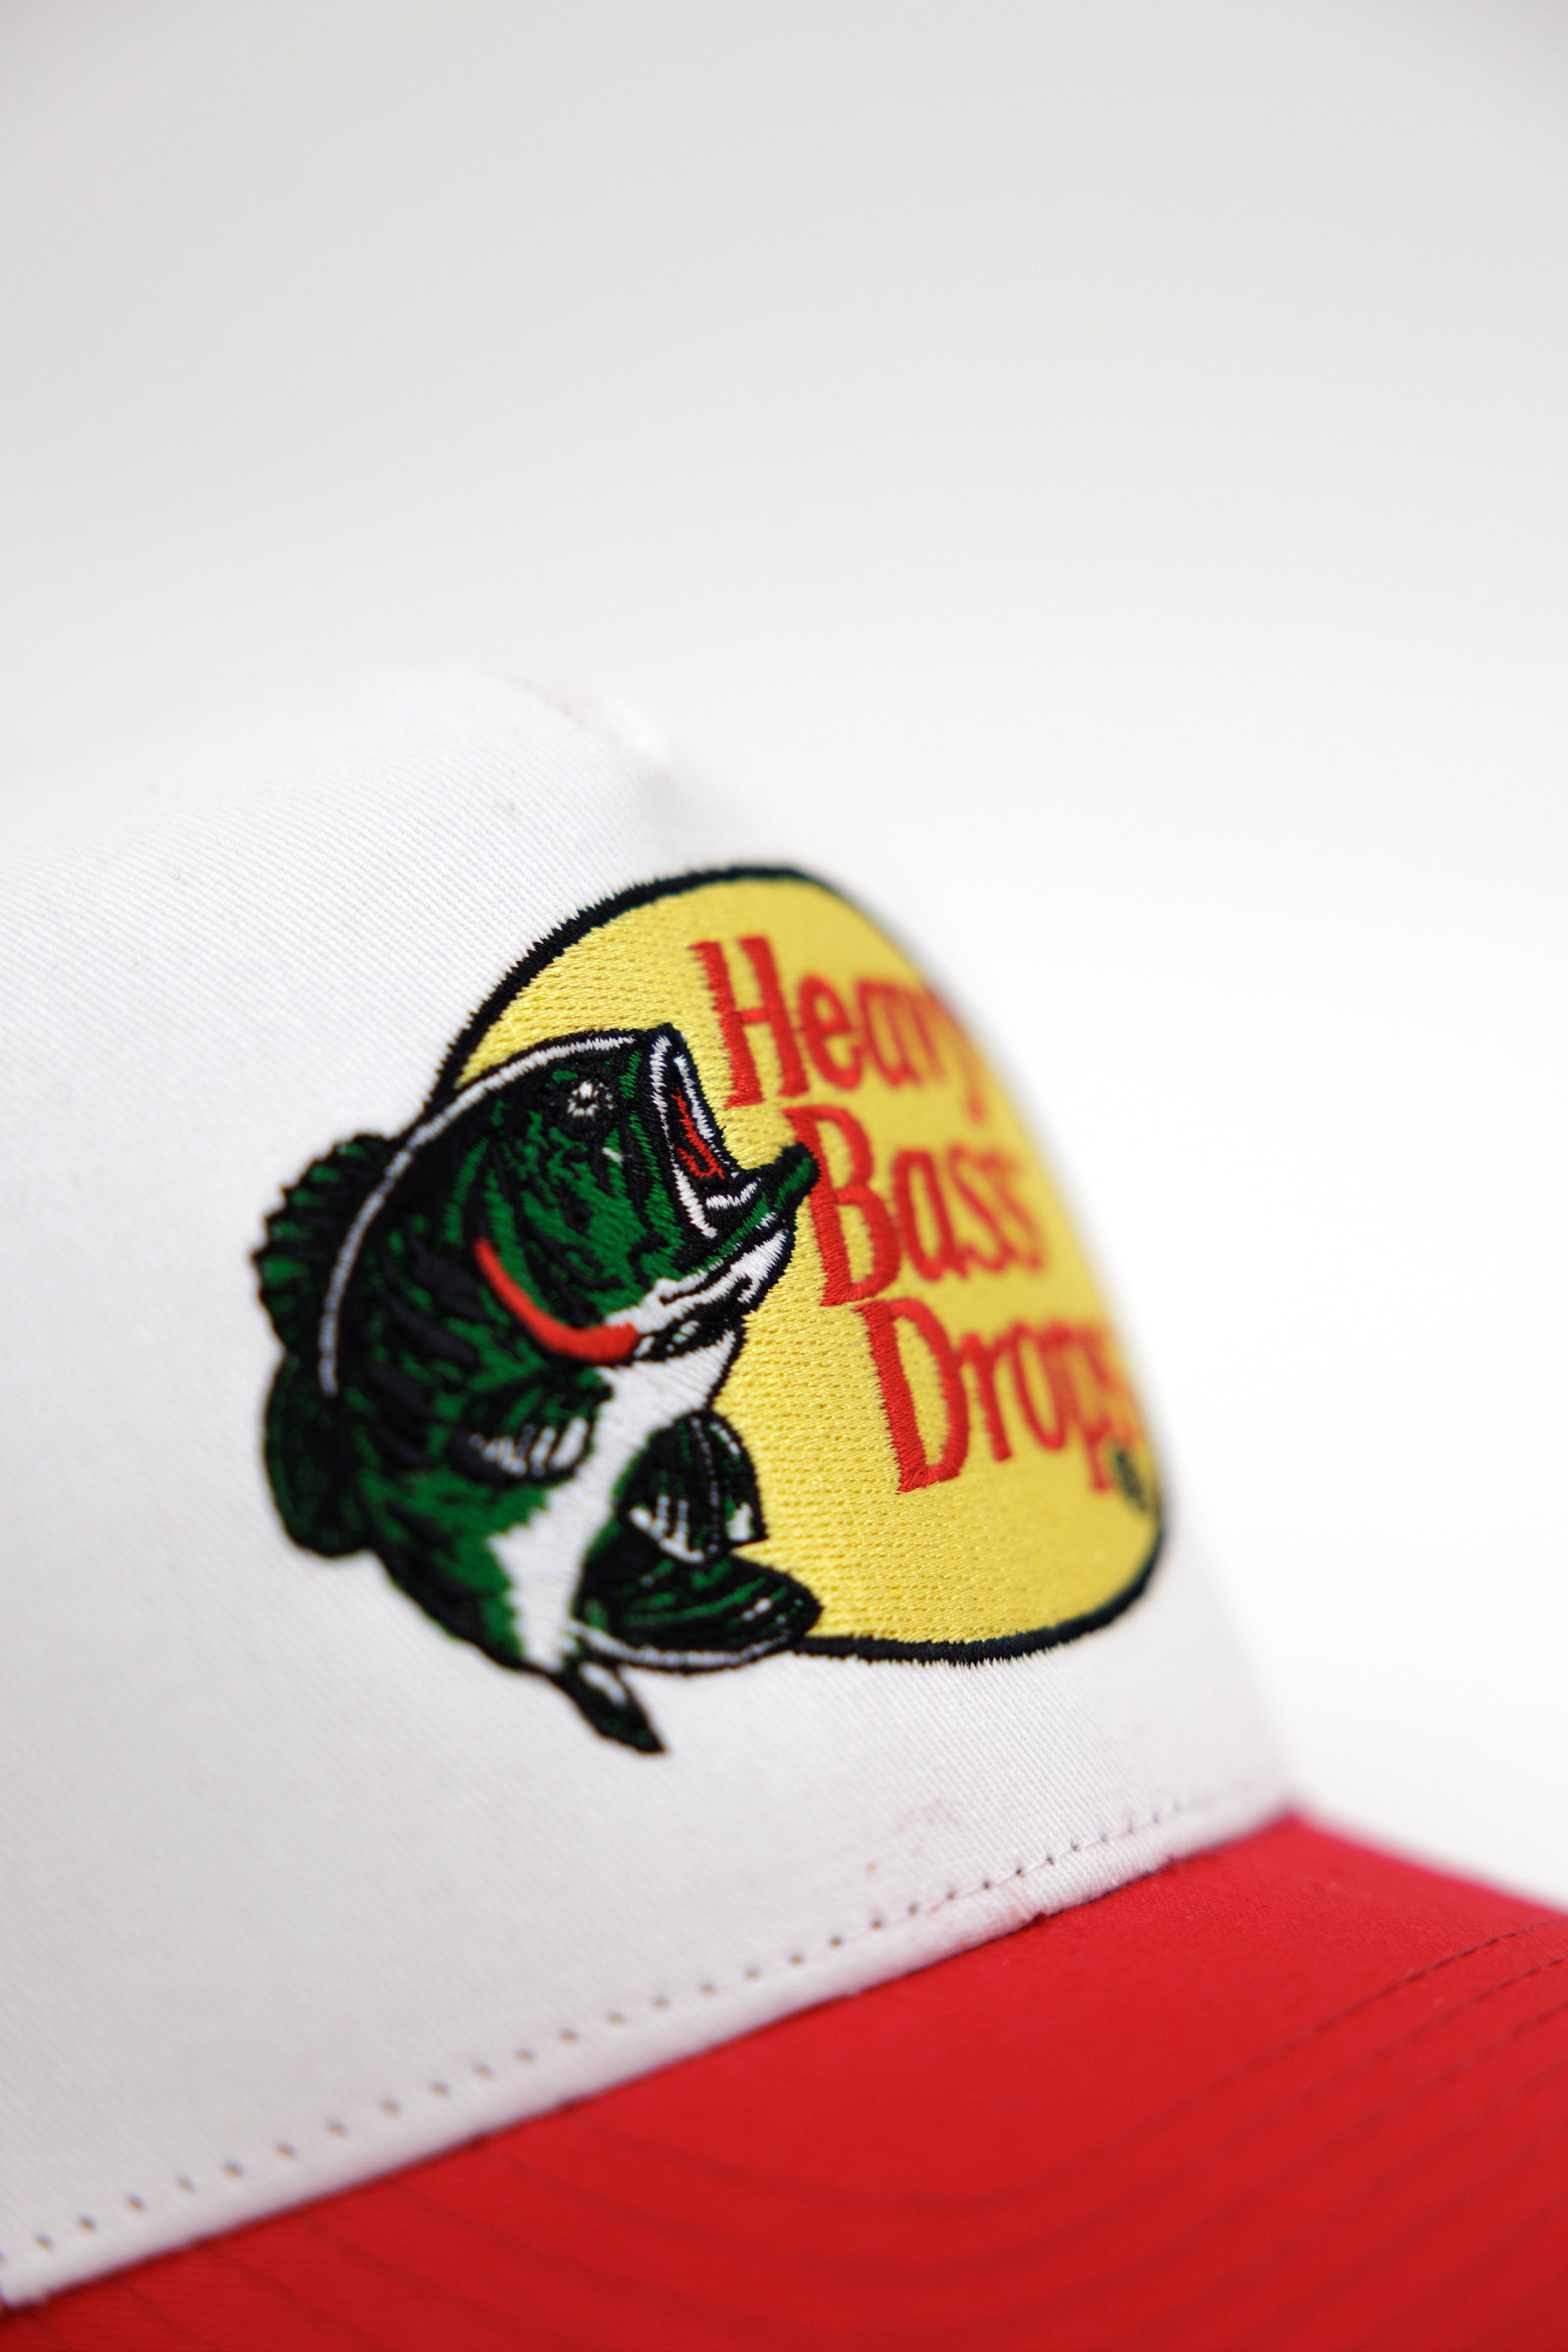 Heavy Bass Drops Trucker Hat (Red)